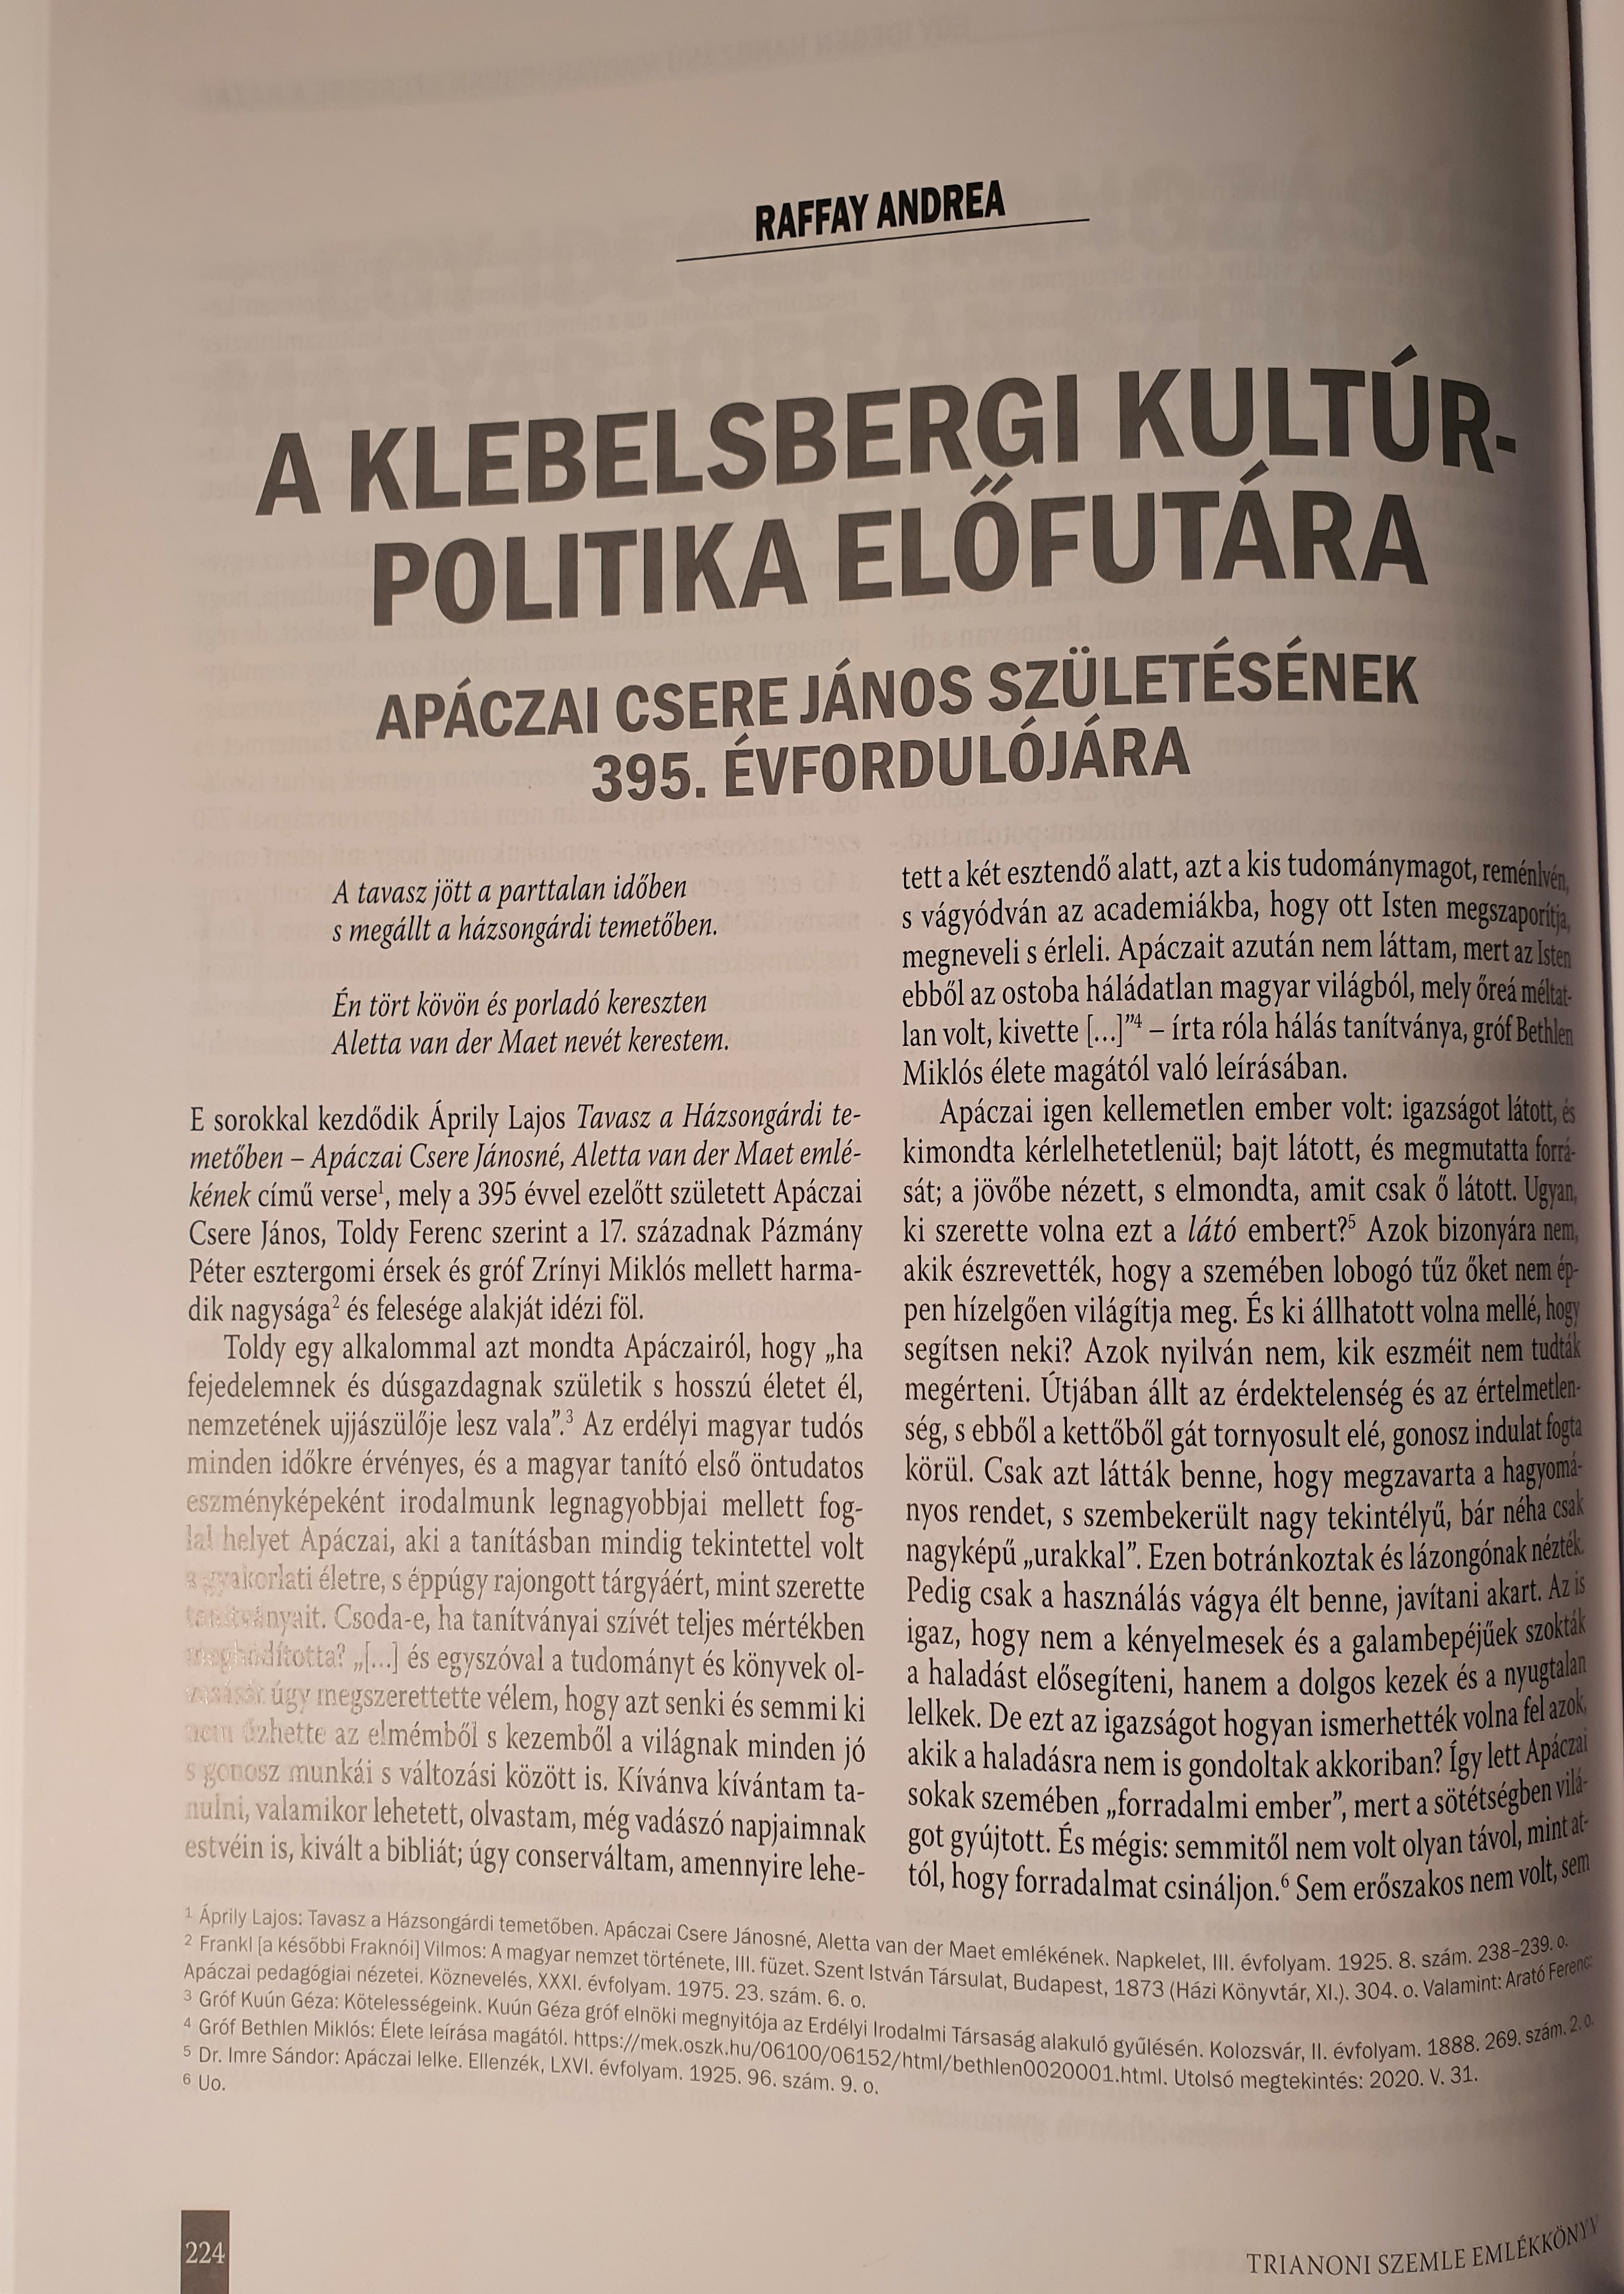 A klebelsbergi kultúrpolitika előfutára